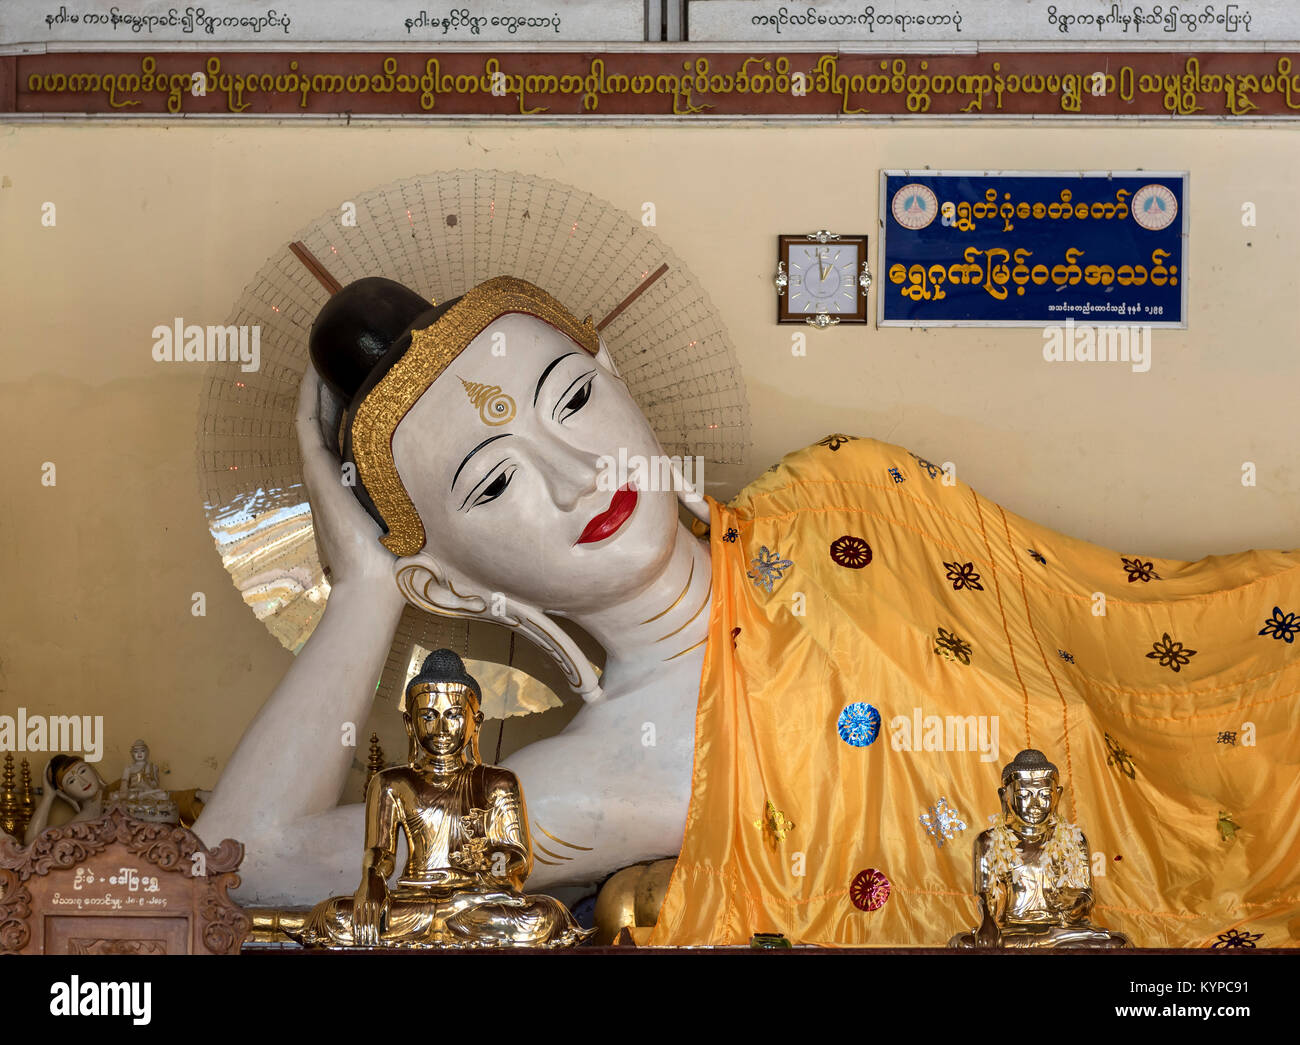 Reclining Buddha statue, Shwedagon Pagoda, Yangon, Myanmar (Burma) Stock Photo